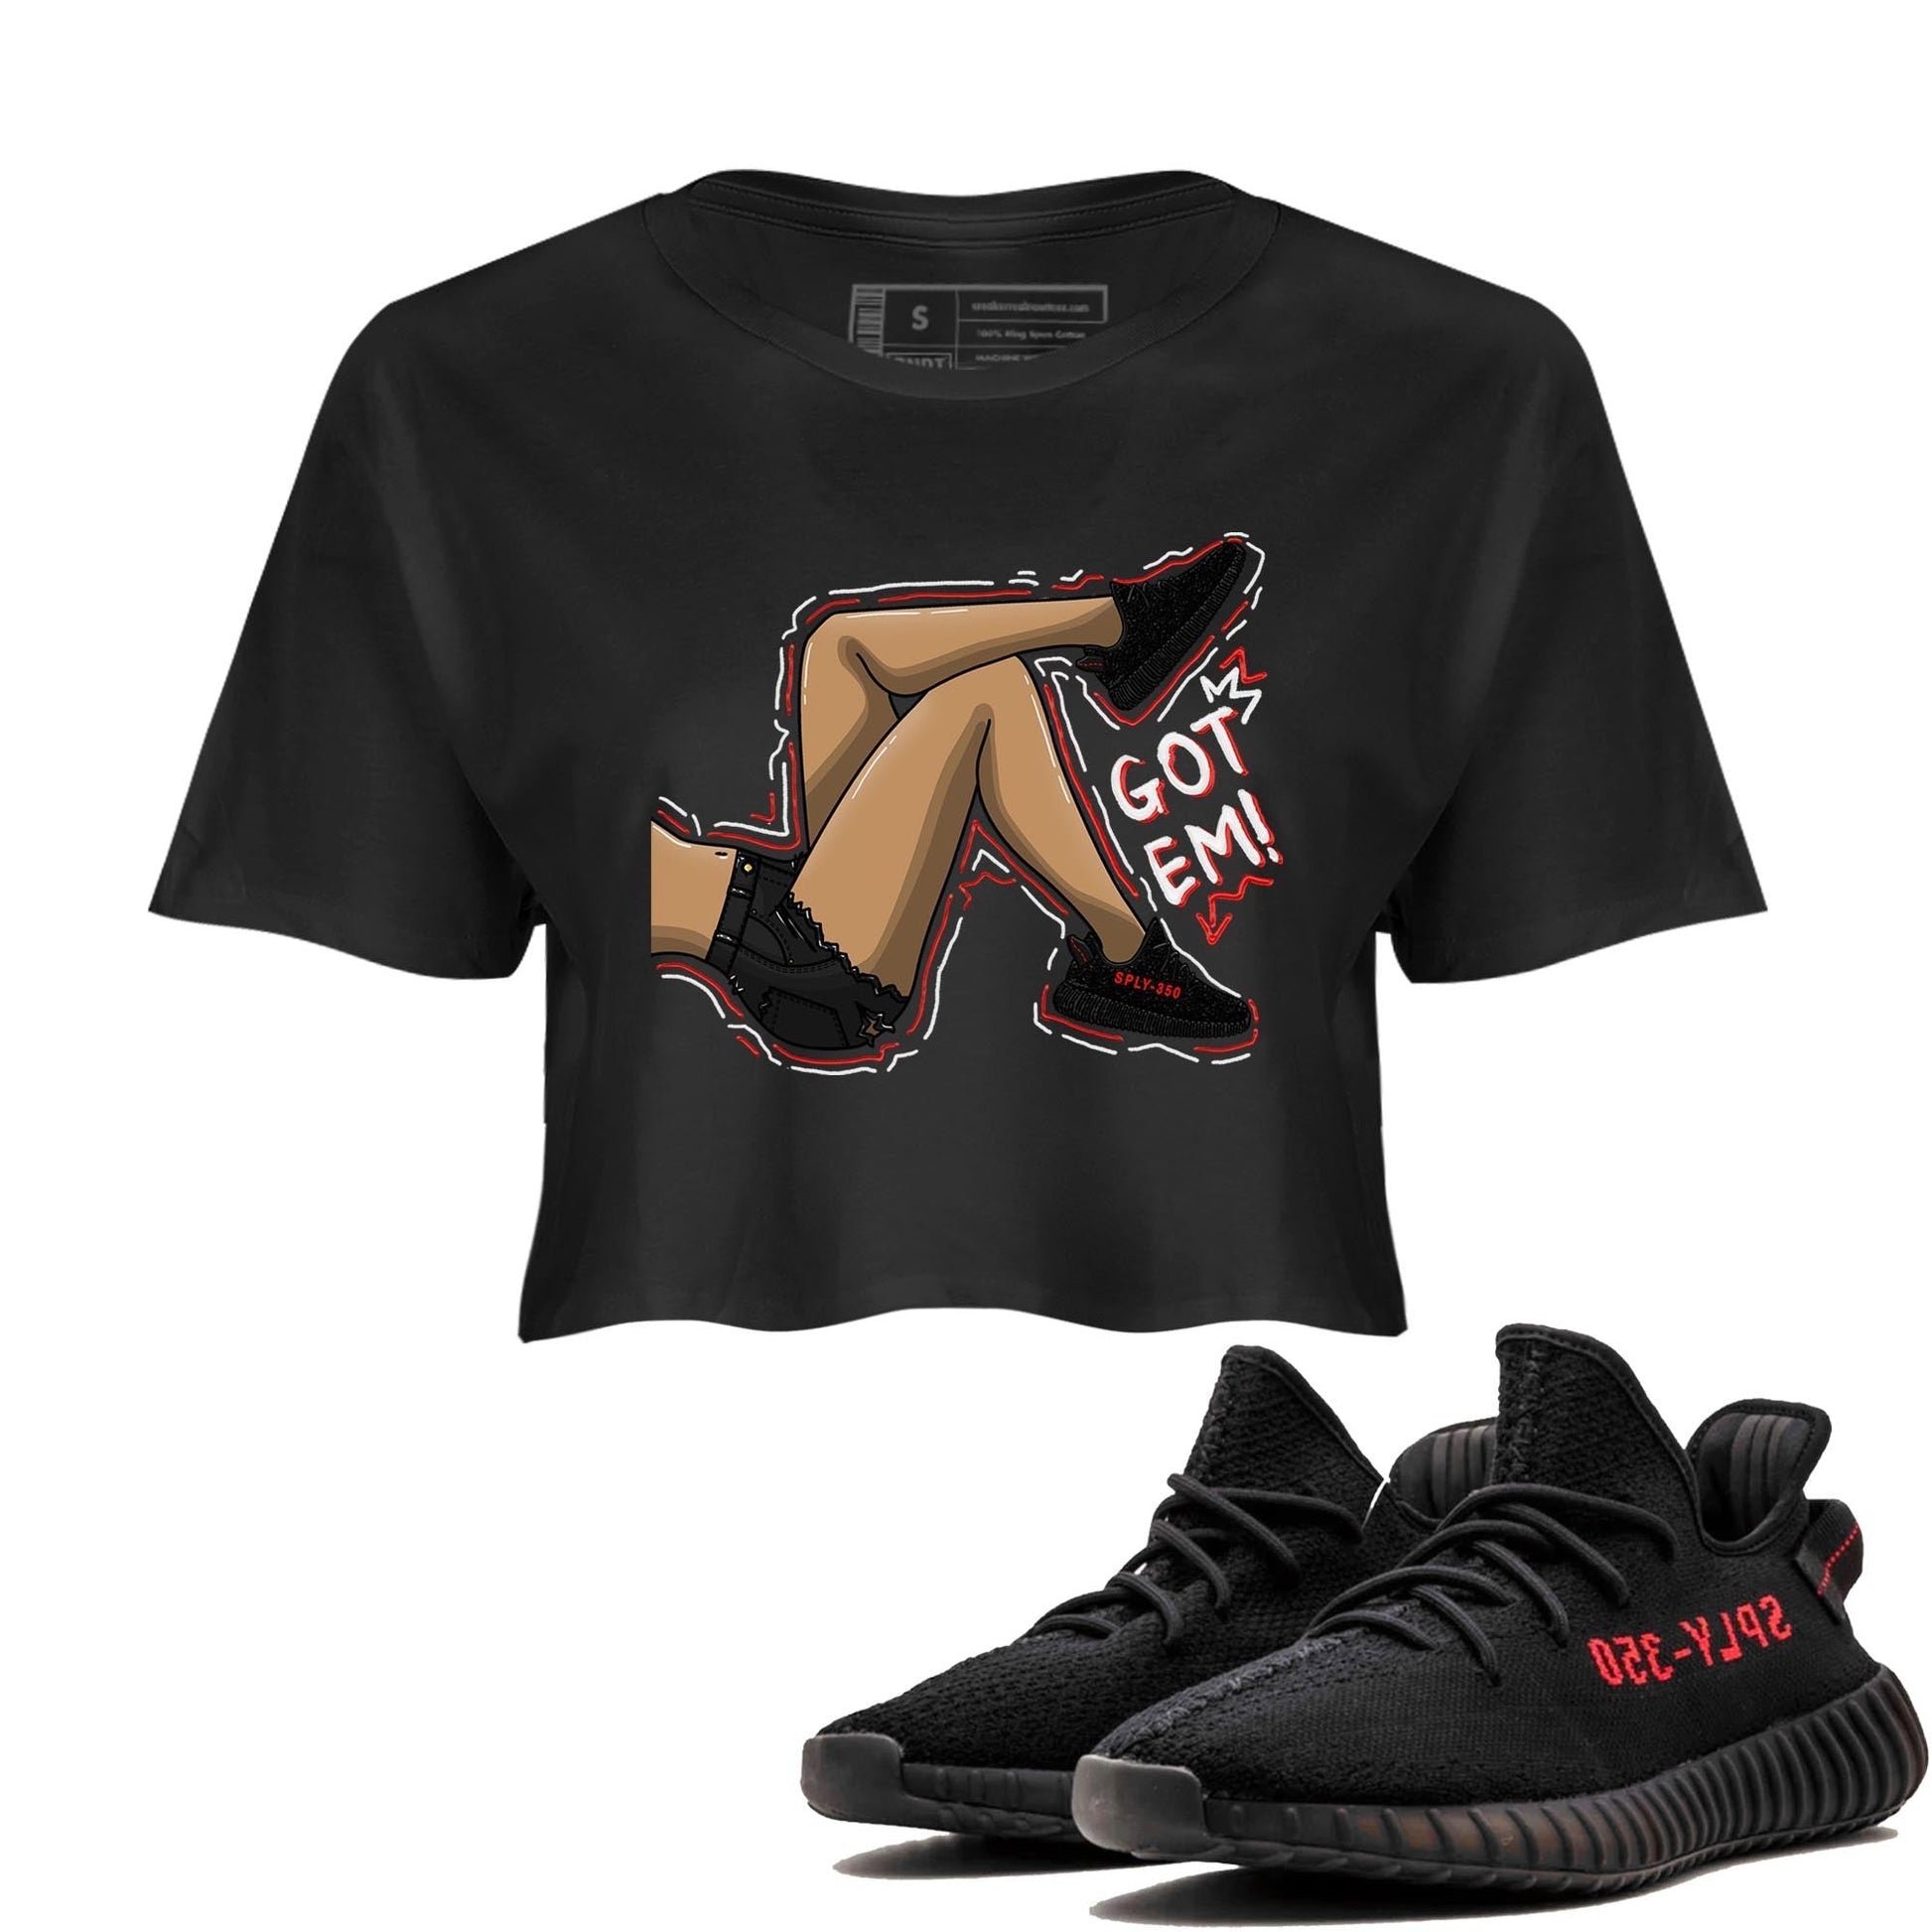 Yeezy 350 Bred shirt to match jordans Got Em Legs Streetwear Sneaker Shirt Yeezy Boost 350 V2 Bred Drip Gear Zone Sneaker Matching Clothing Black 1 Crop T-Shirt